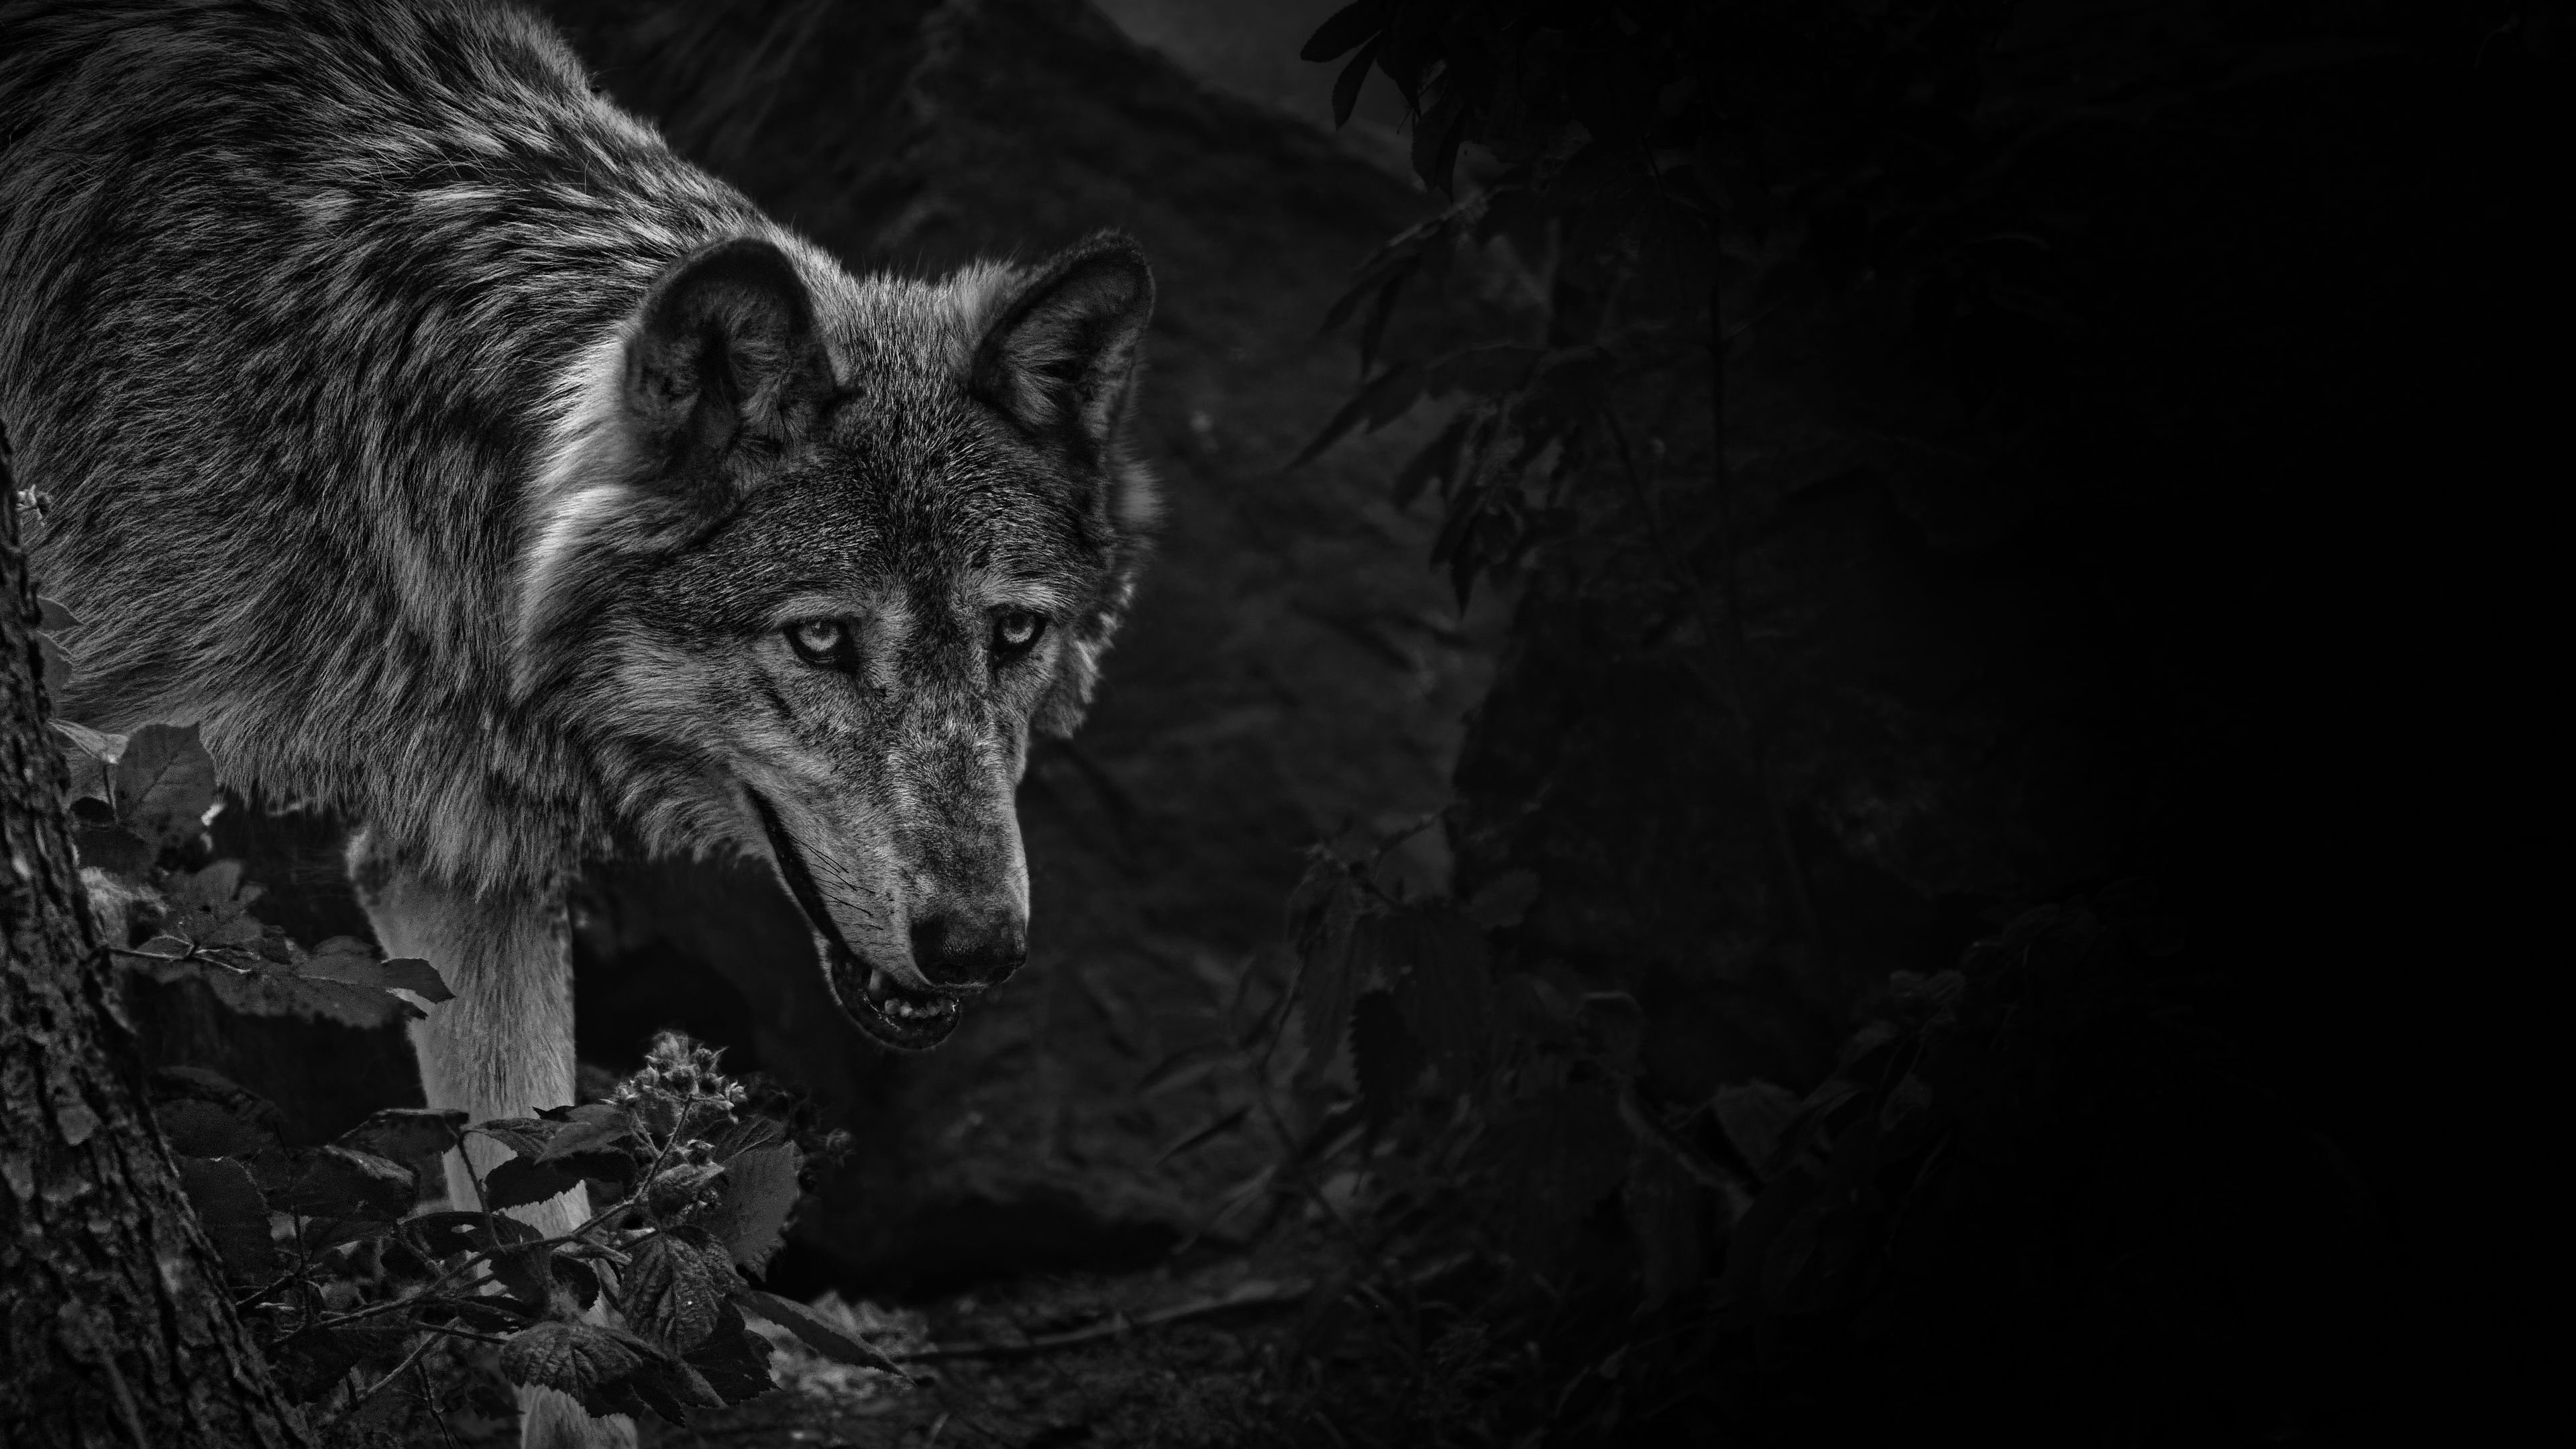 Hình nền sói lạnh lùng là sự kết hợp hoàn hảo giữa vẻ đẹp hoang dã và sự lạnh lùng. Hãy tận hưởng cảm giác của sự nghiêm túc và hấp dẫn mang lại bởi hình ảnh sói lạnh lùng này!